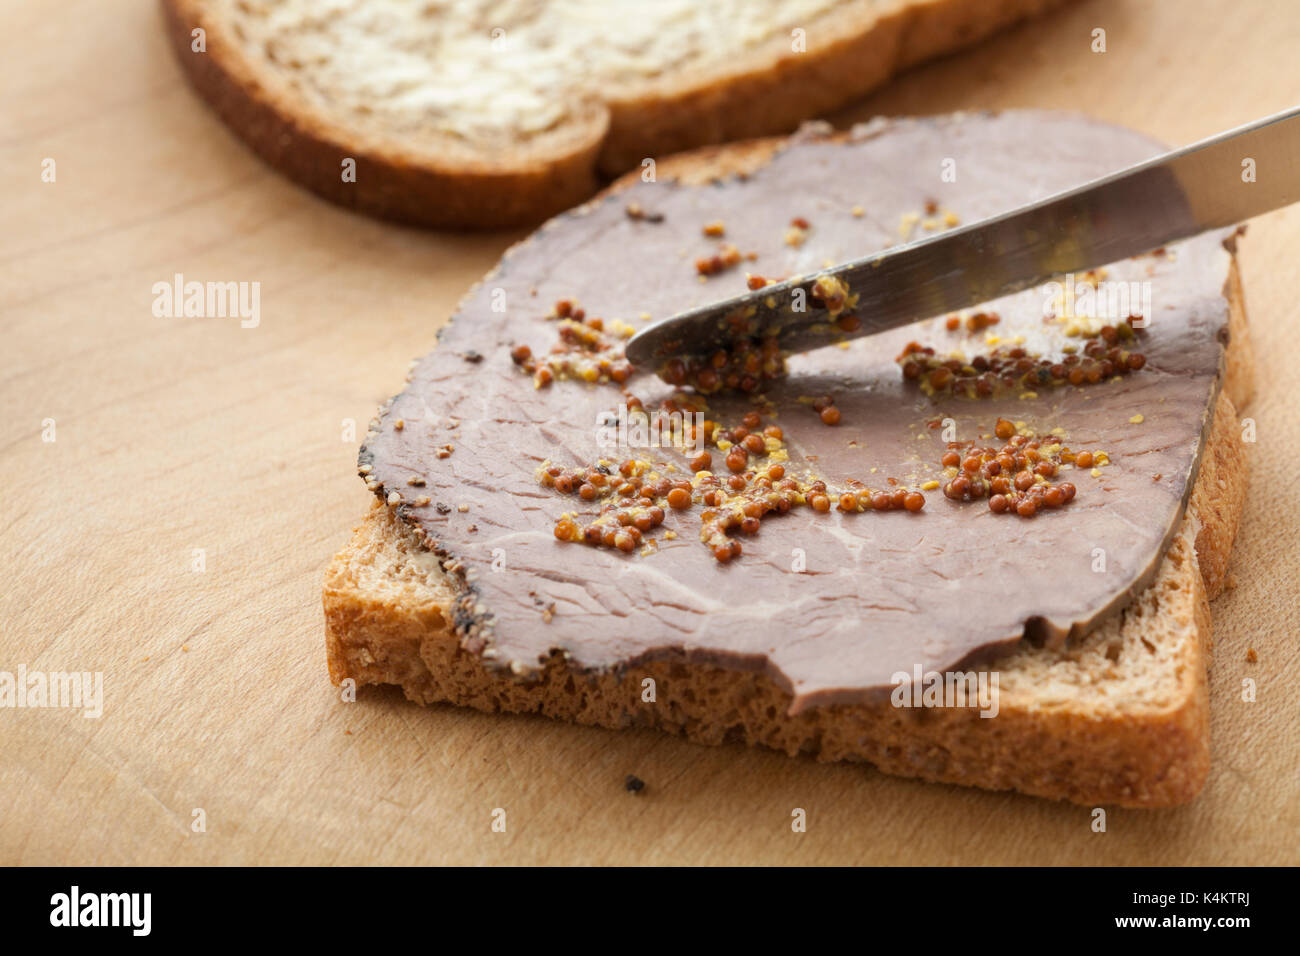 Facendo un sandwich con pane integrale, la carne di manzo britannica con crosta impepato e diffondere con cereali integrali senape. Foto Stock